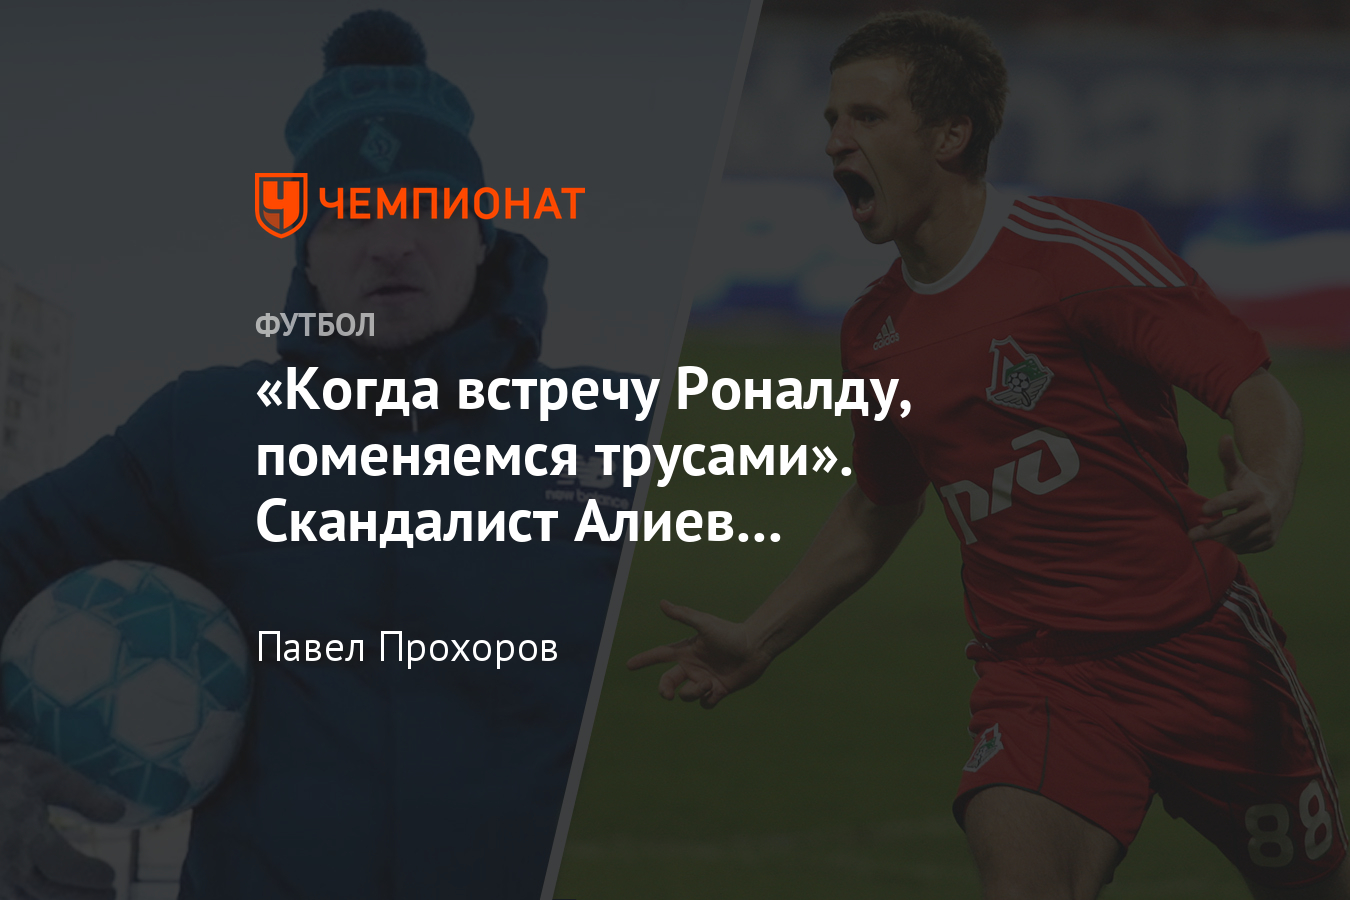 Песня Александра Алиева «Футбол в моей крови», дебют бывшего игрока  «Локомотива» в музыке - Чемпионат